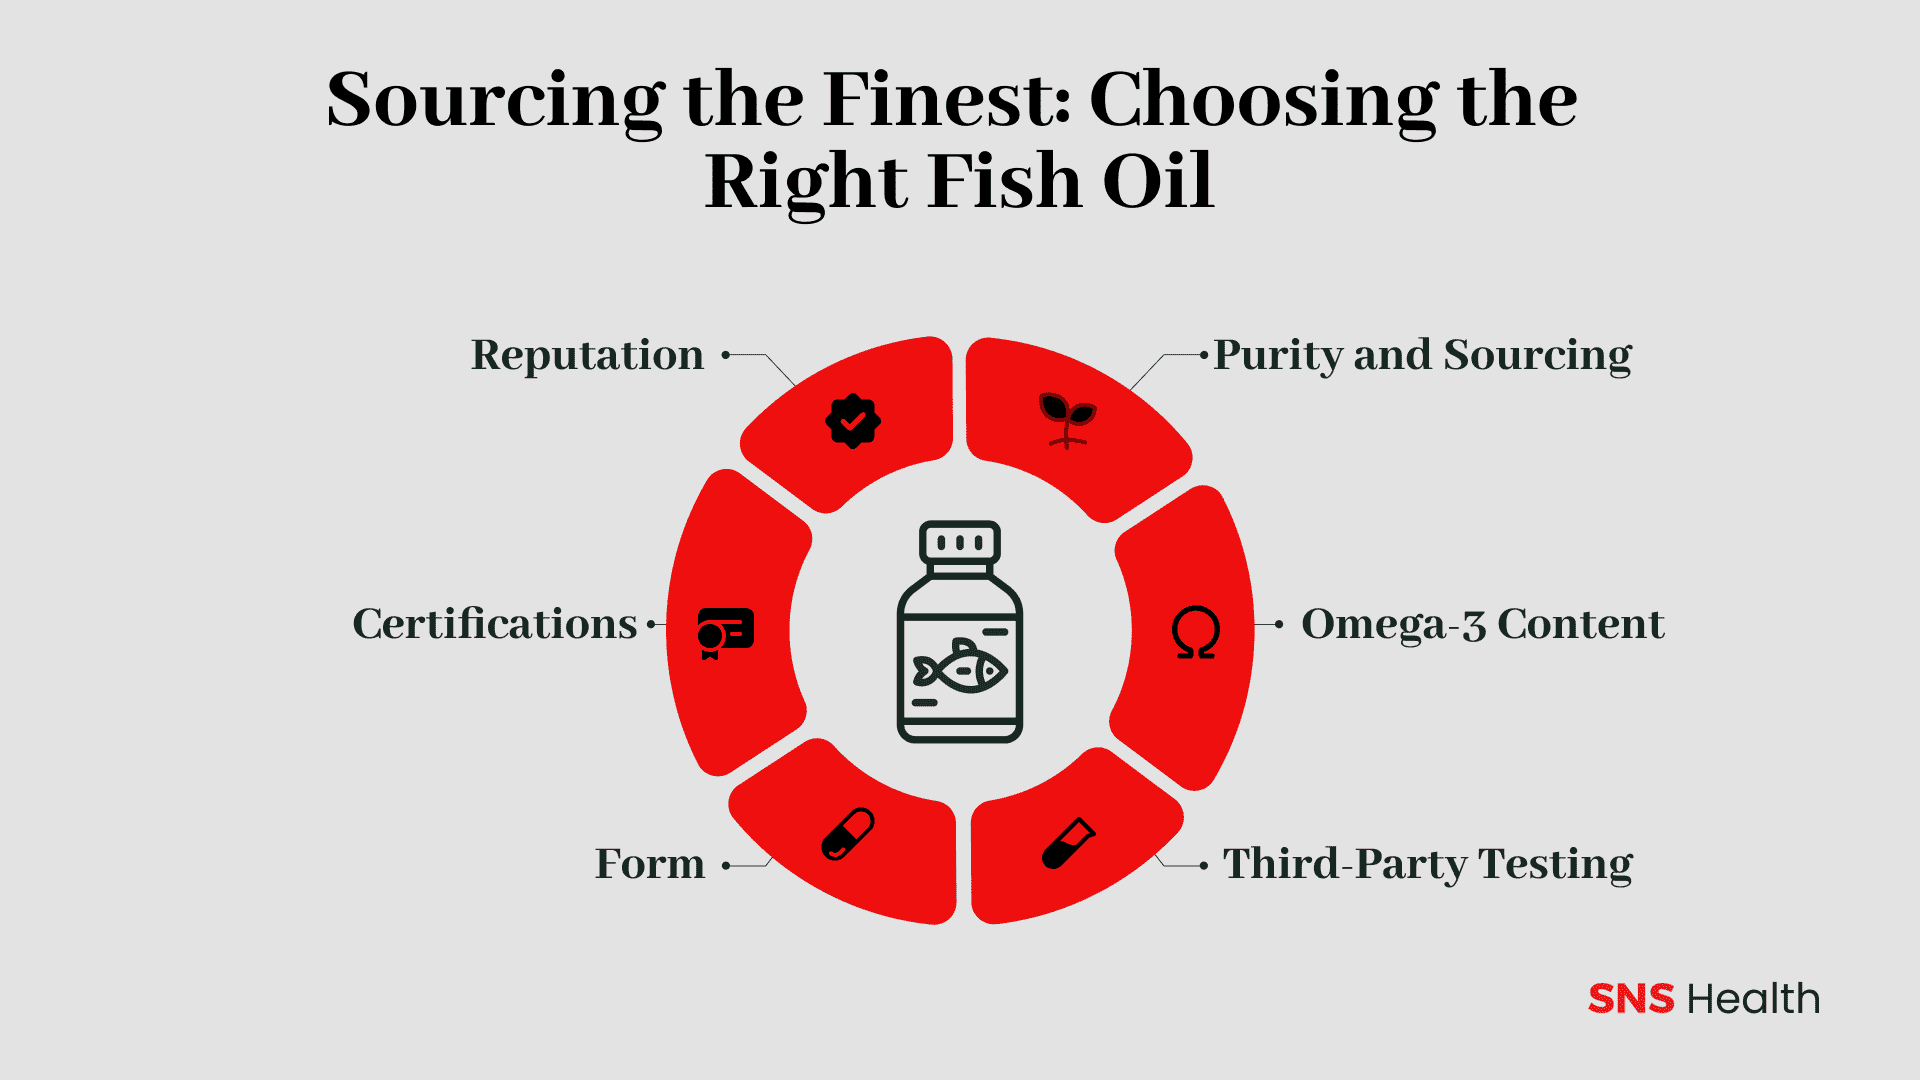 Das Beste beschaffen: Das richtige Fischöl auswählen